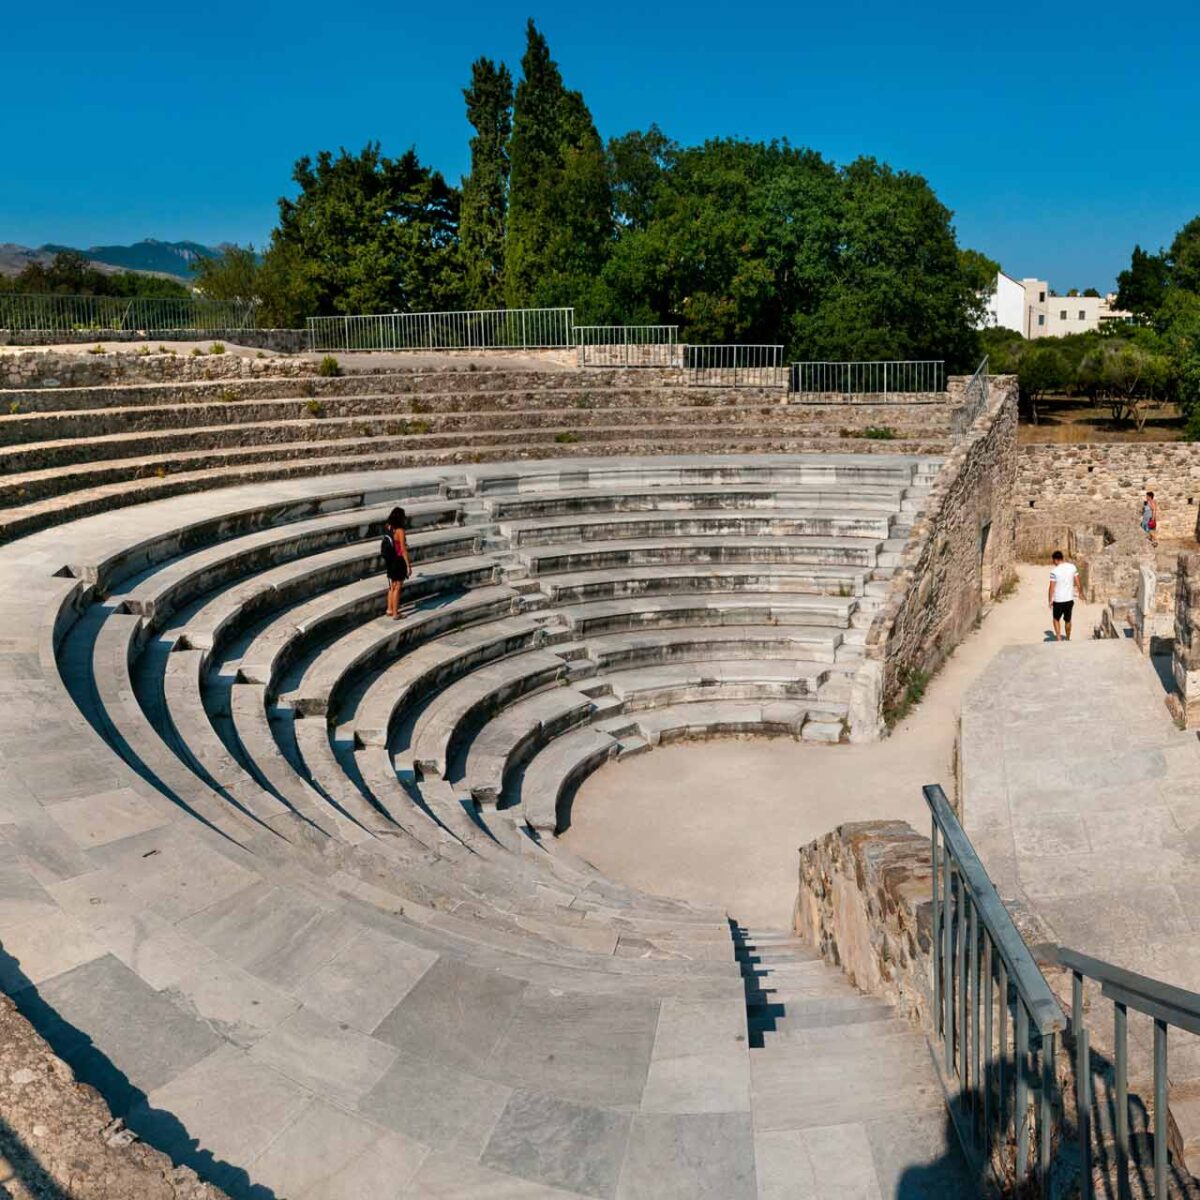 Roman Odeon na ostrově Kos – památka z období římské říše